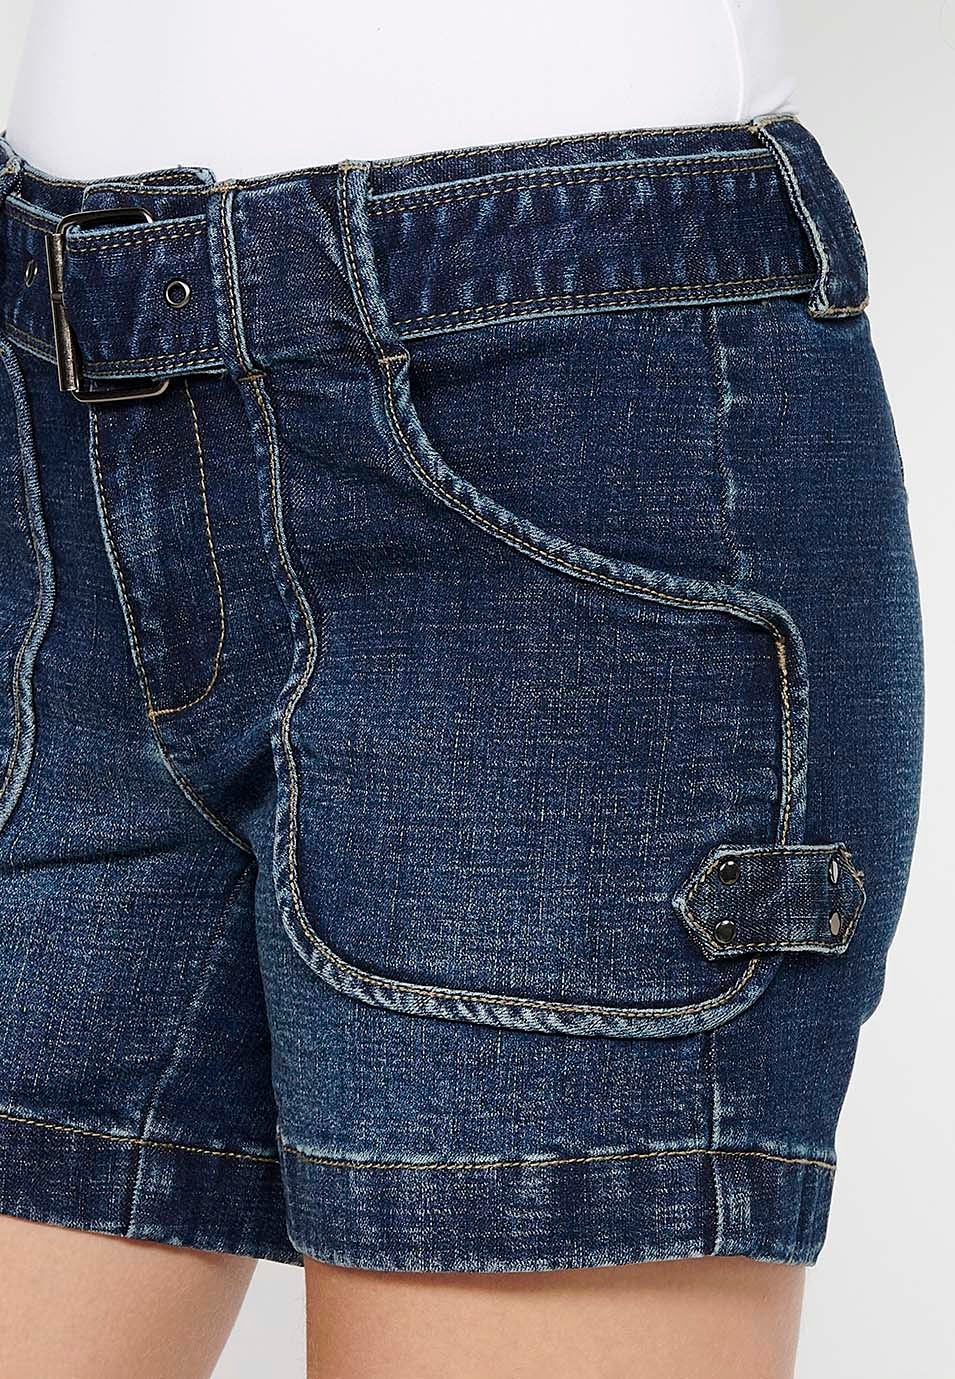 Jeansshorts mit Frontverschluss mit Reißverschluss und Knopf sowie verstellbarer Taille mit Gürtel und aufgesetzten Taschen in Blau für Damen 6